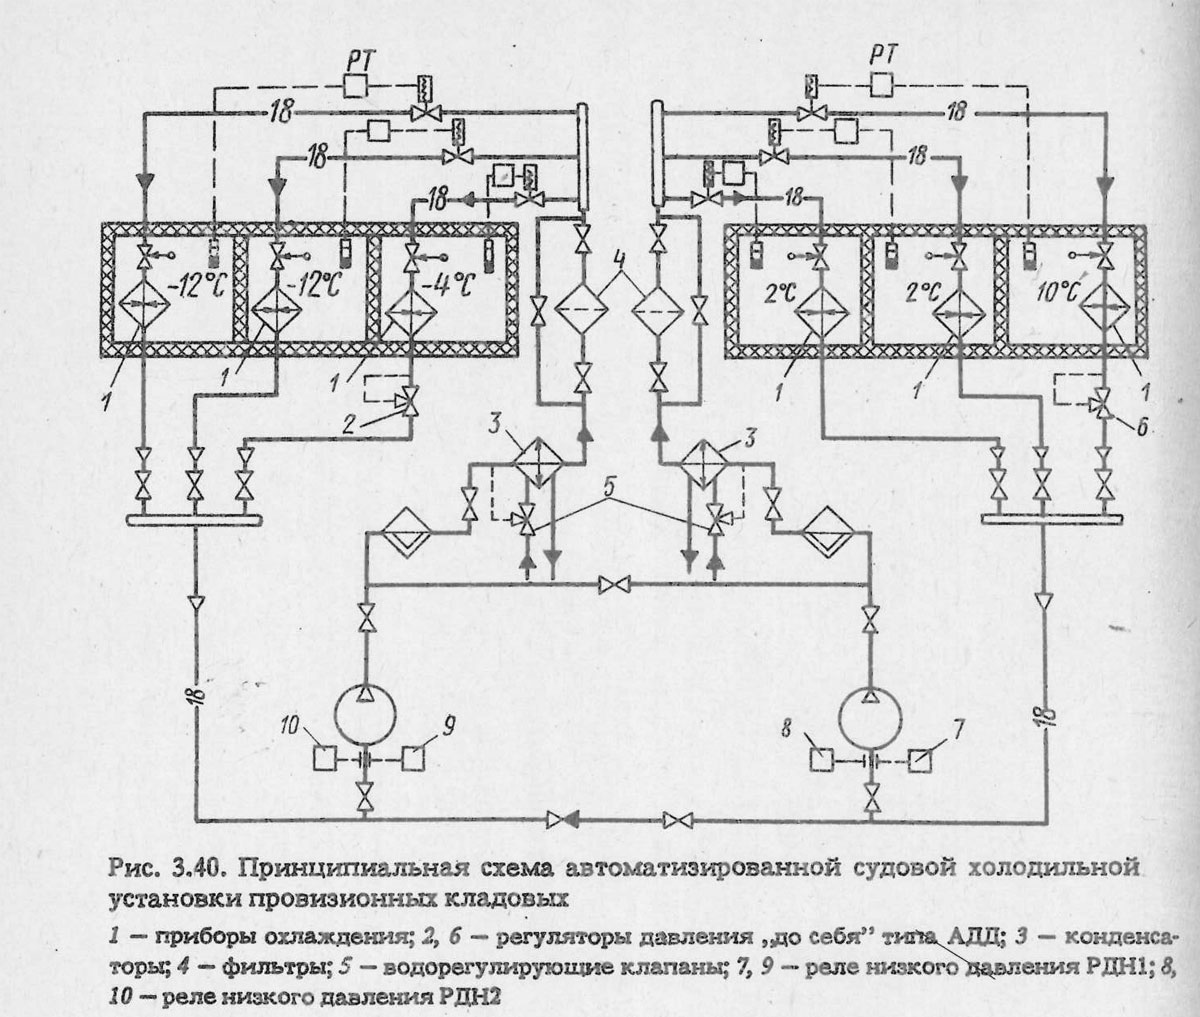 Принципиальная схема автоматизированной судовой холодильной установки провизионных кладовых